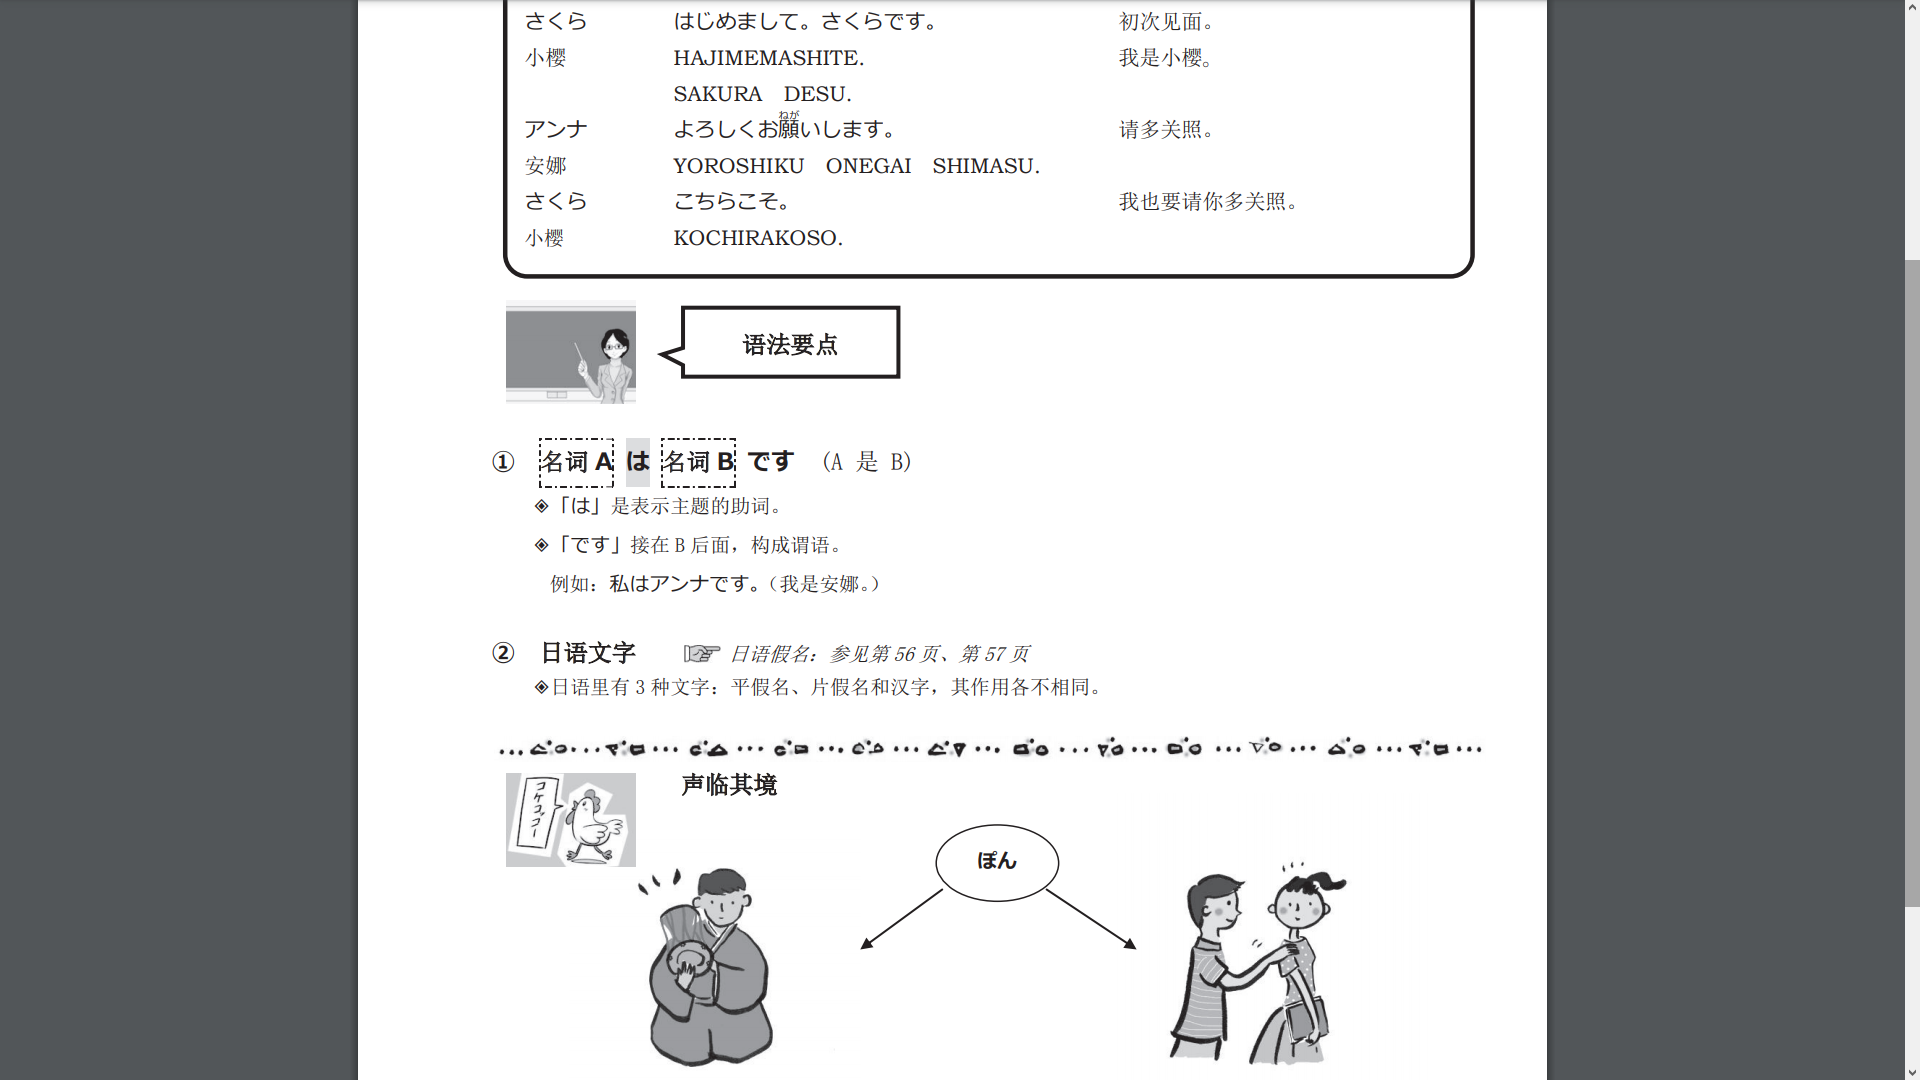 一起來跟著nhk學日文吧 全部課程pdf和mp3音頻免費下載連結整理 無腦日文